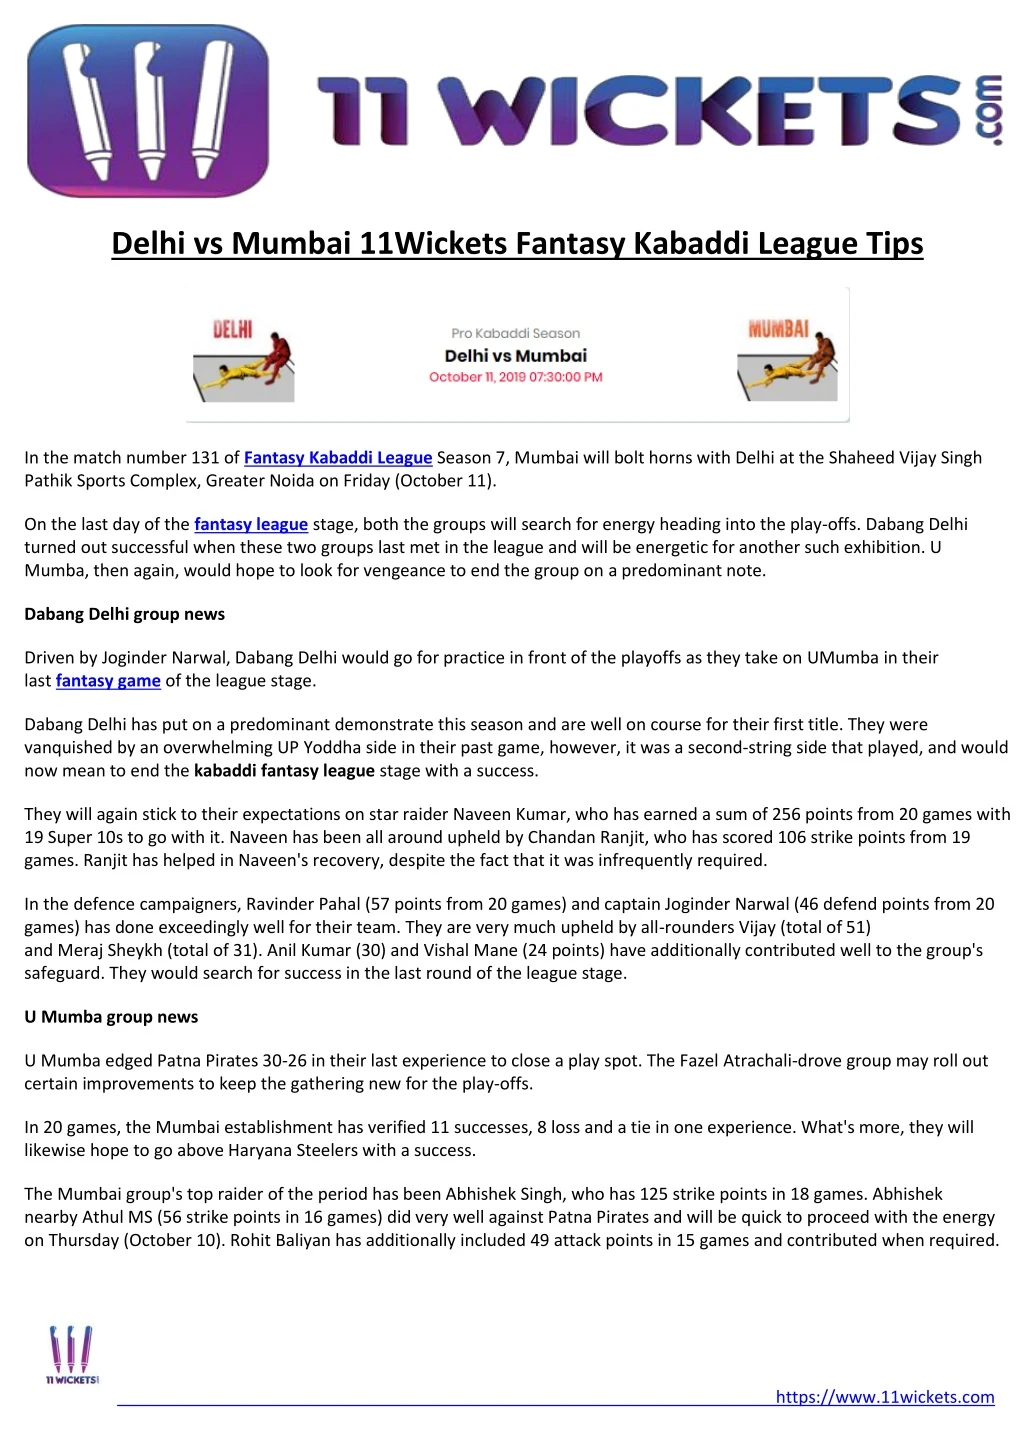 delhi vs mumbai 11wickets fantasy kabaddi league